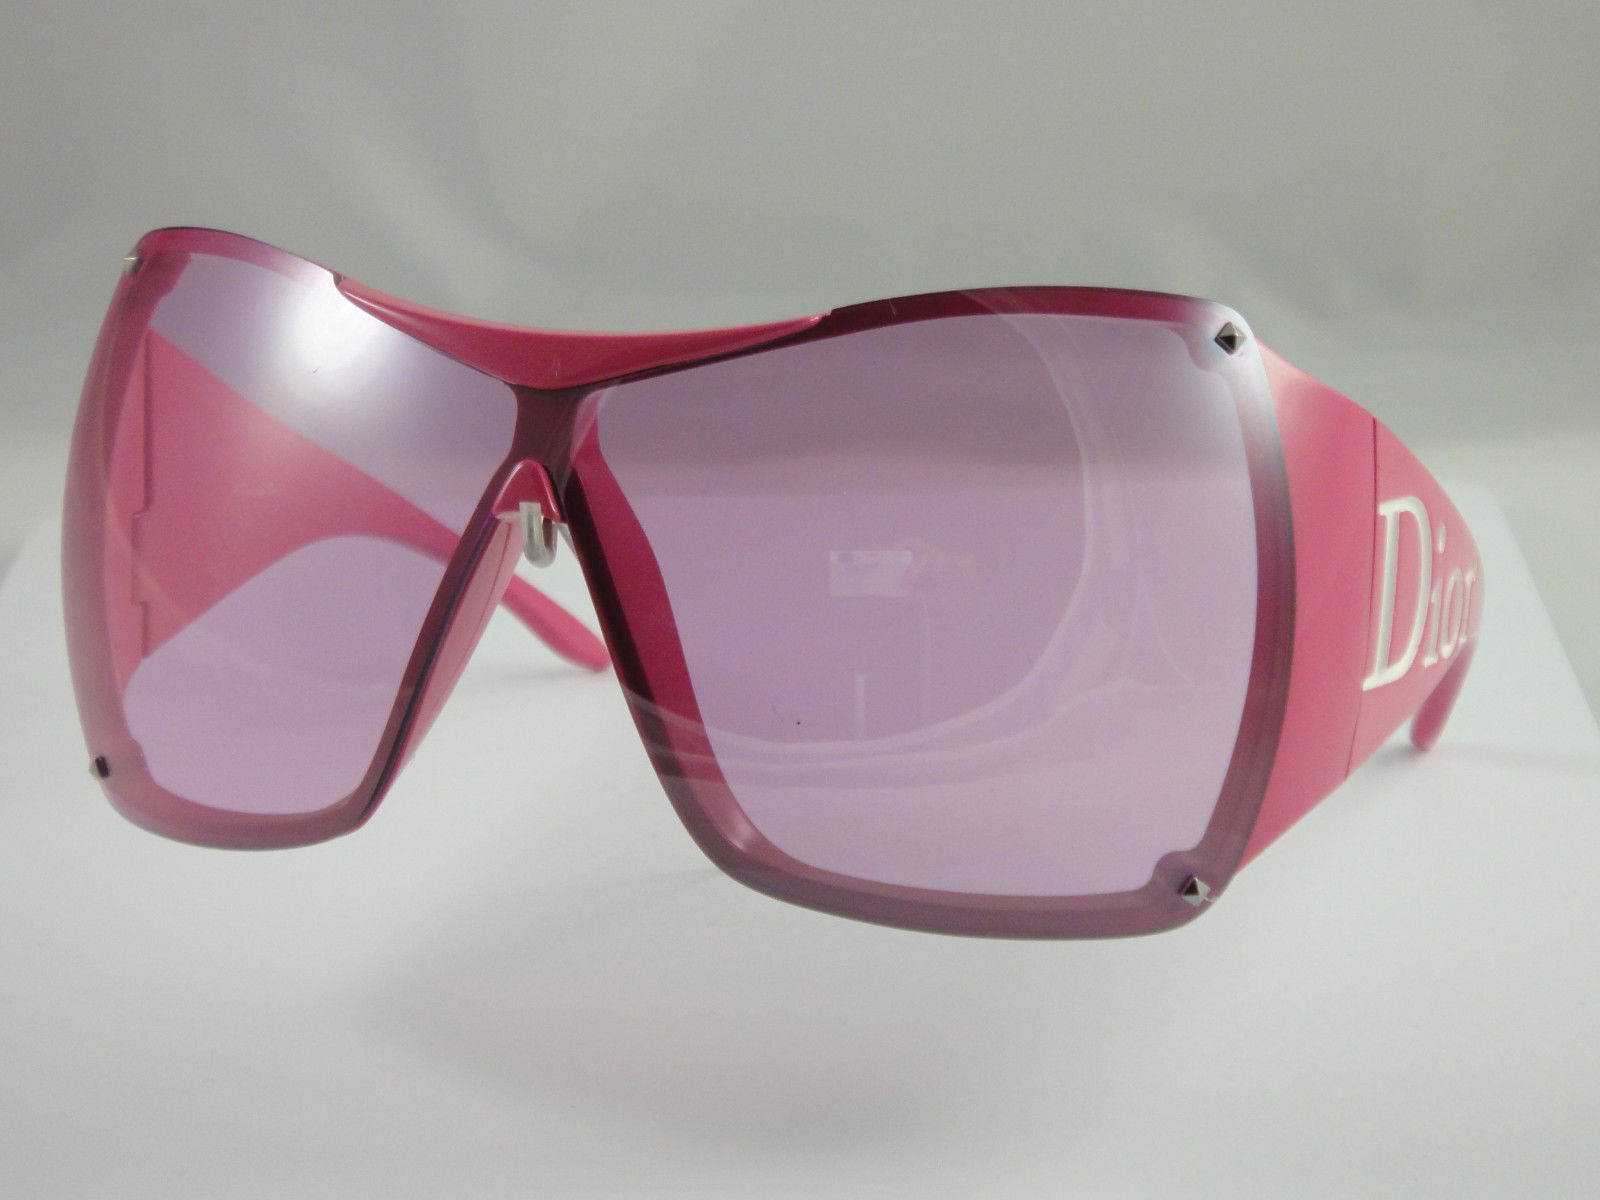 dior overshine sunglasses